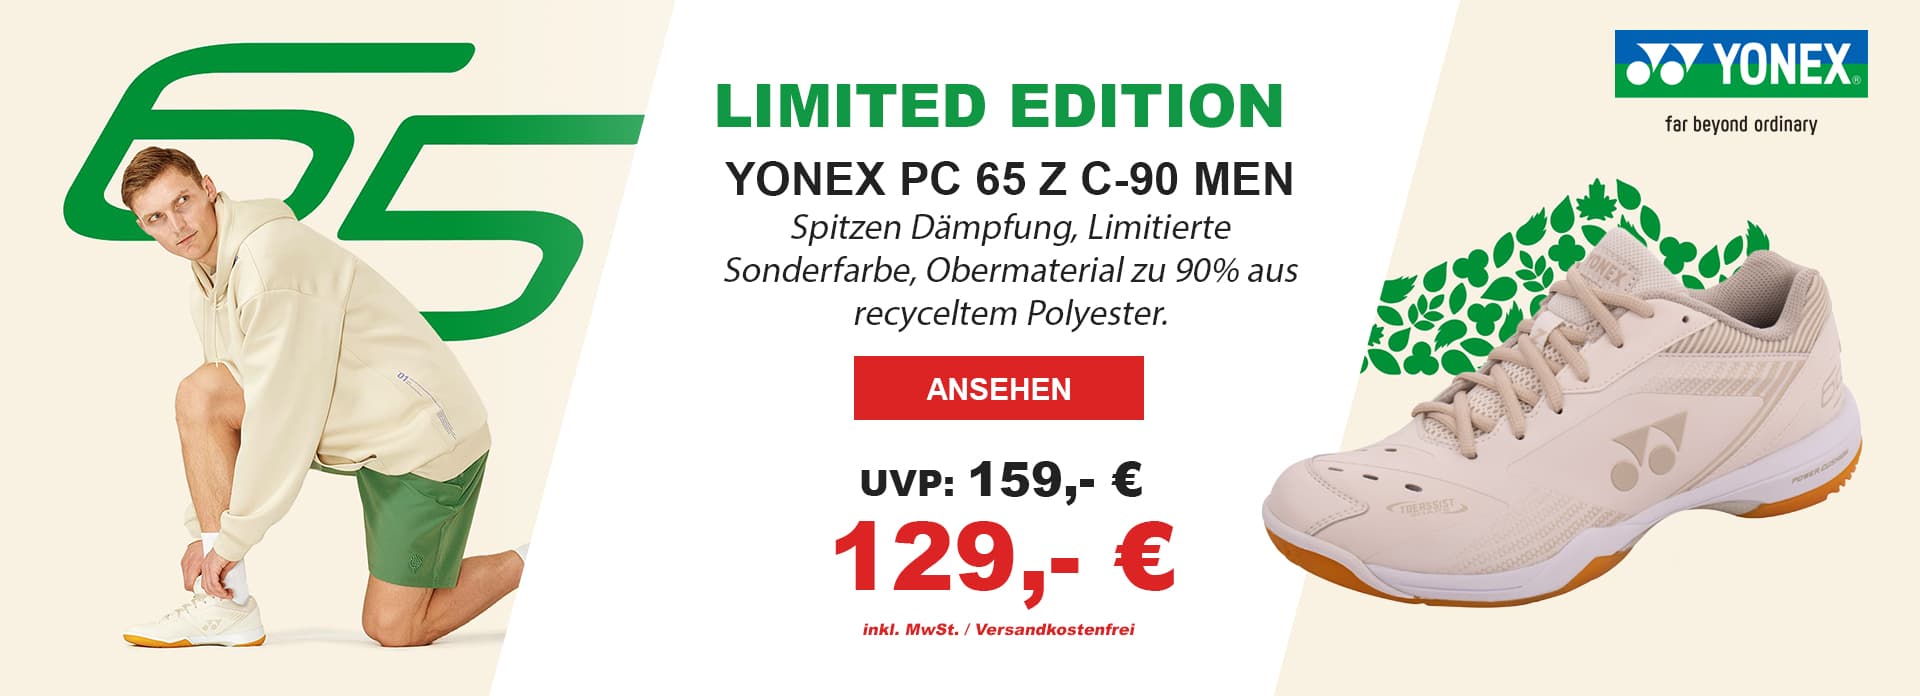 yonex-shb65-z2-c90-badmintonschuh-limited-edition-natural-color-shoes